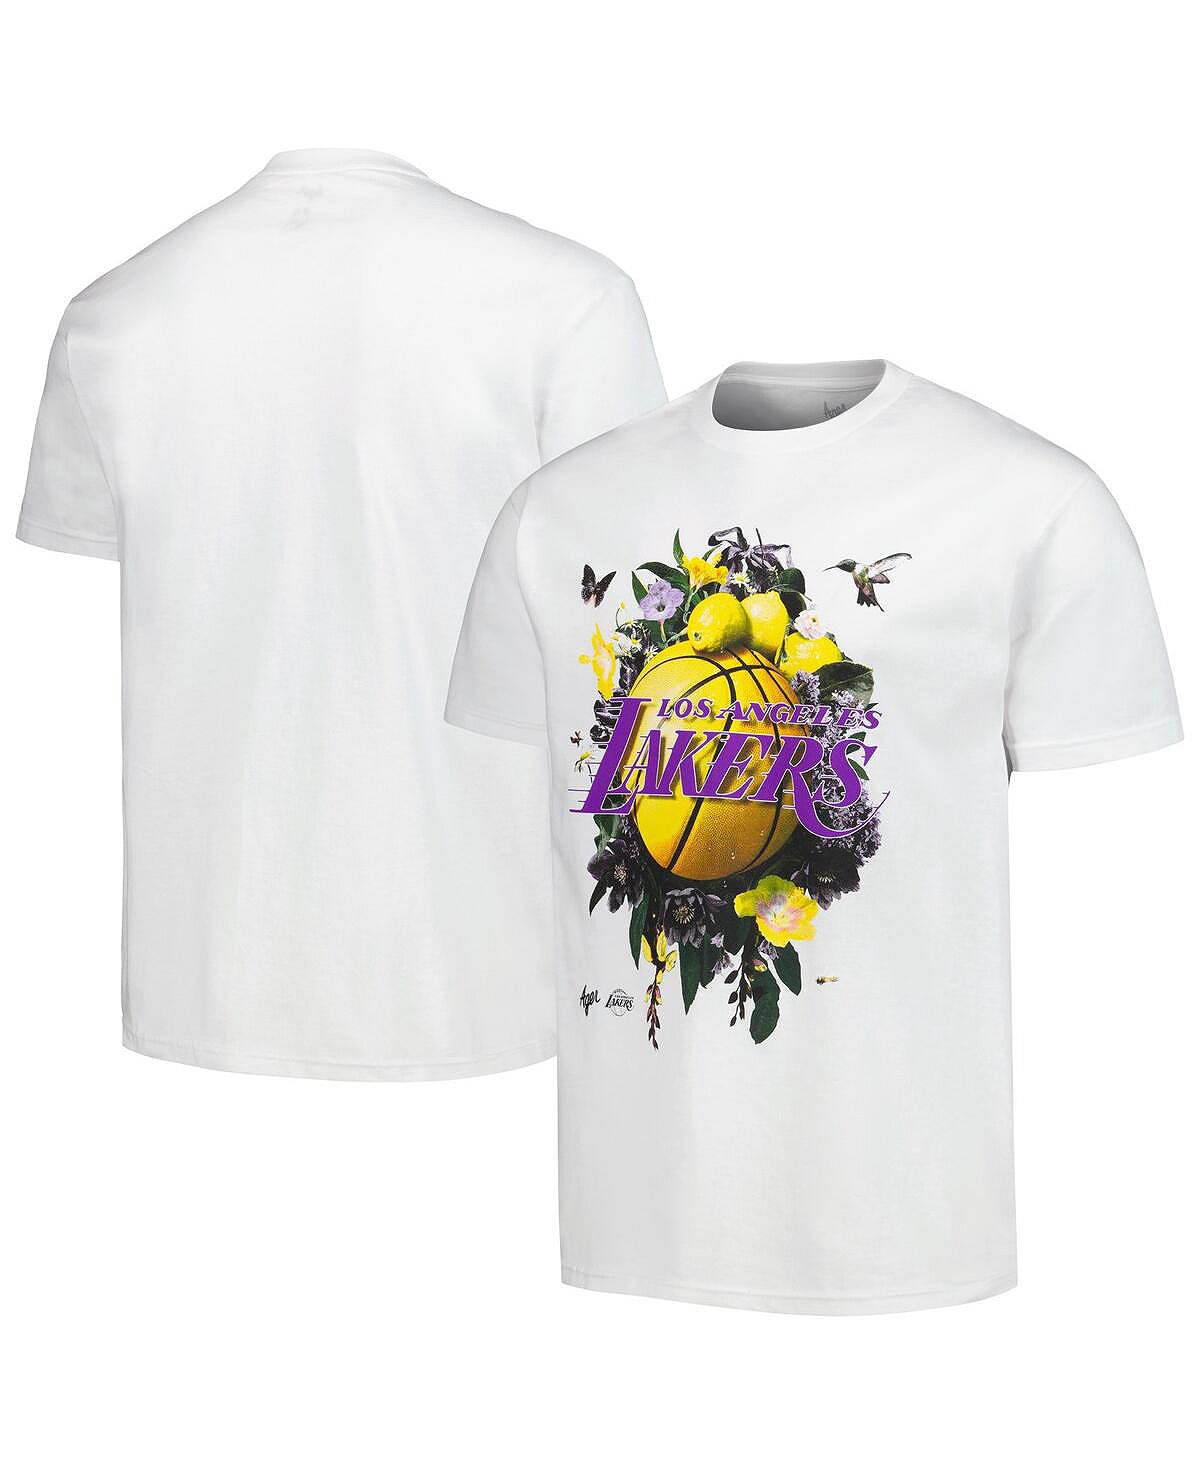 Мужская и женская белая футболка Los Angeles Lakers с надписью Artist Series NBA Exclusive Collection гербер к лос анджелес